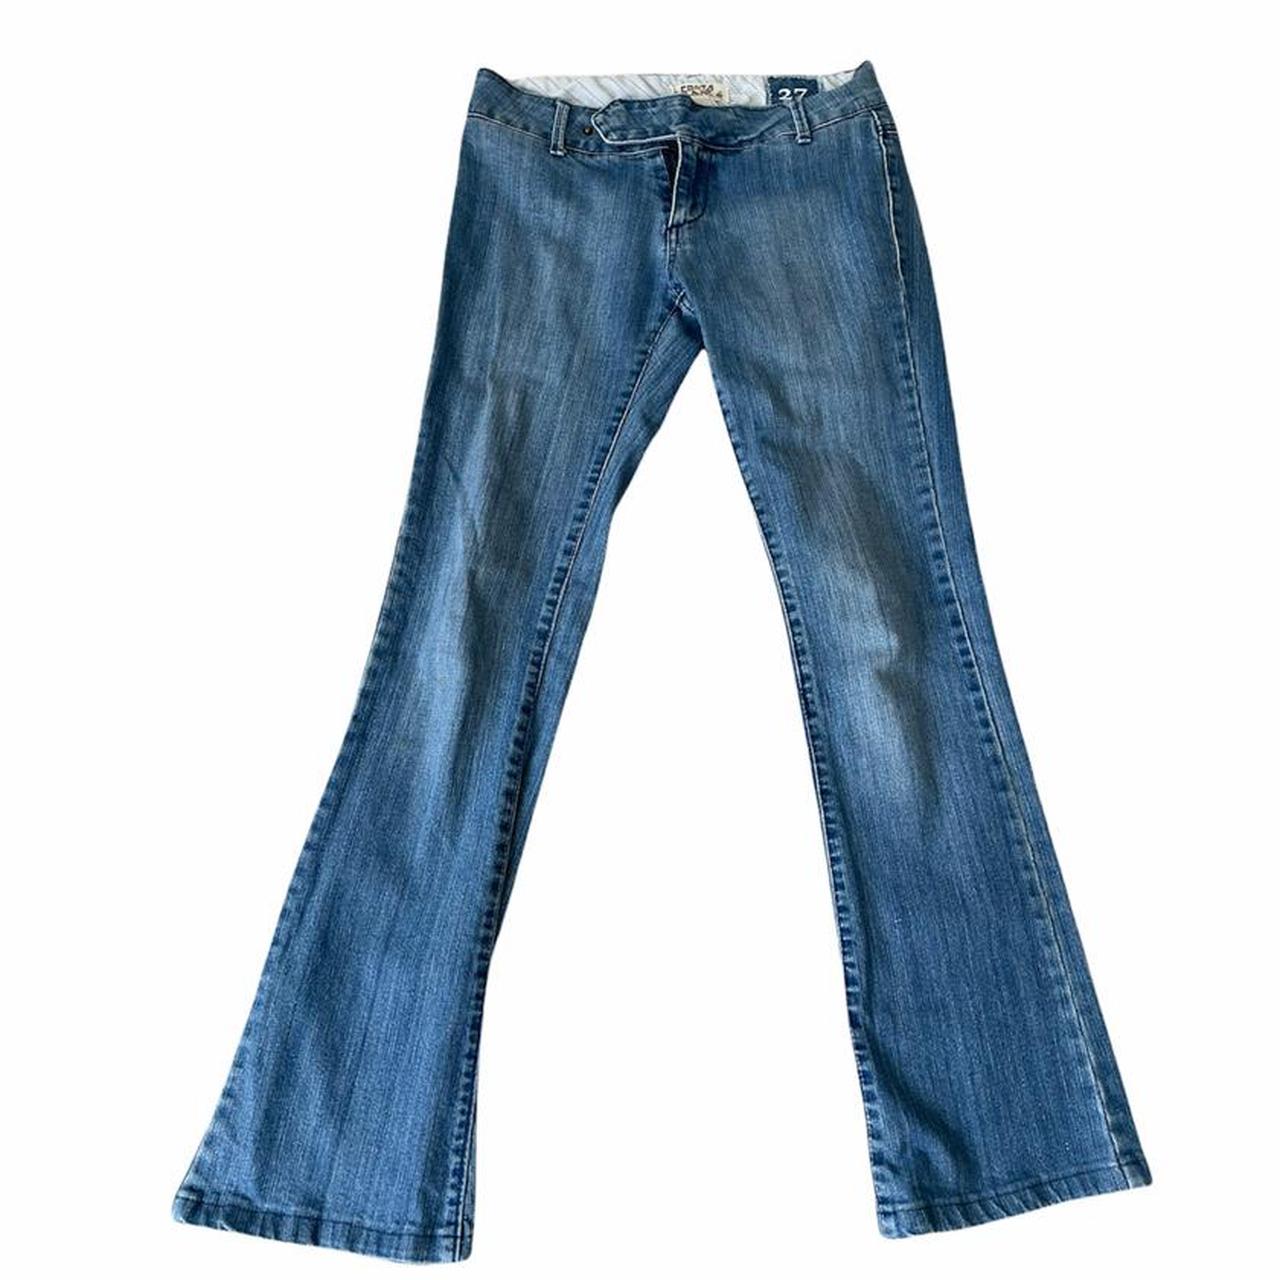 belle jeans 🌻 // y2k style low rise flare jeans in - Depop